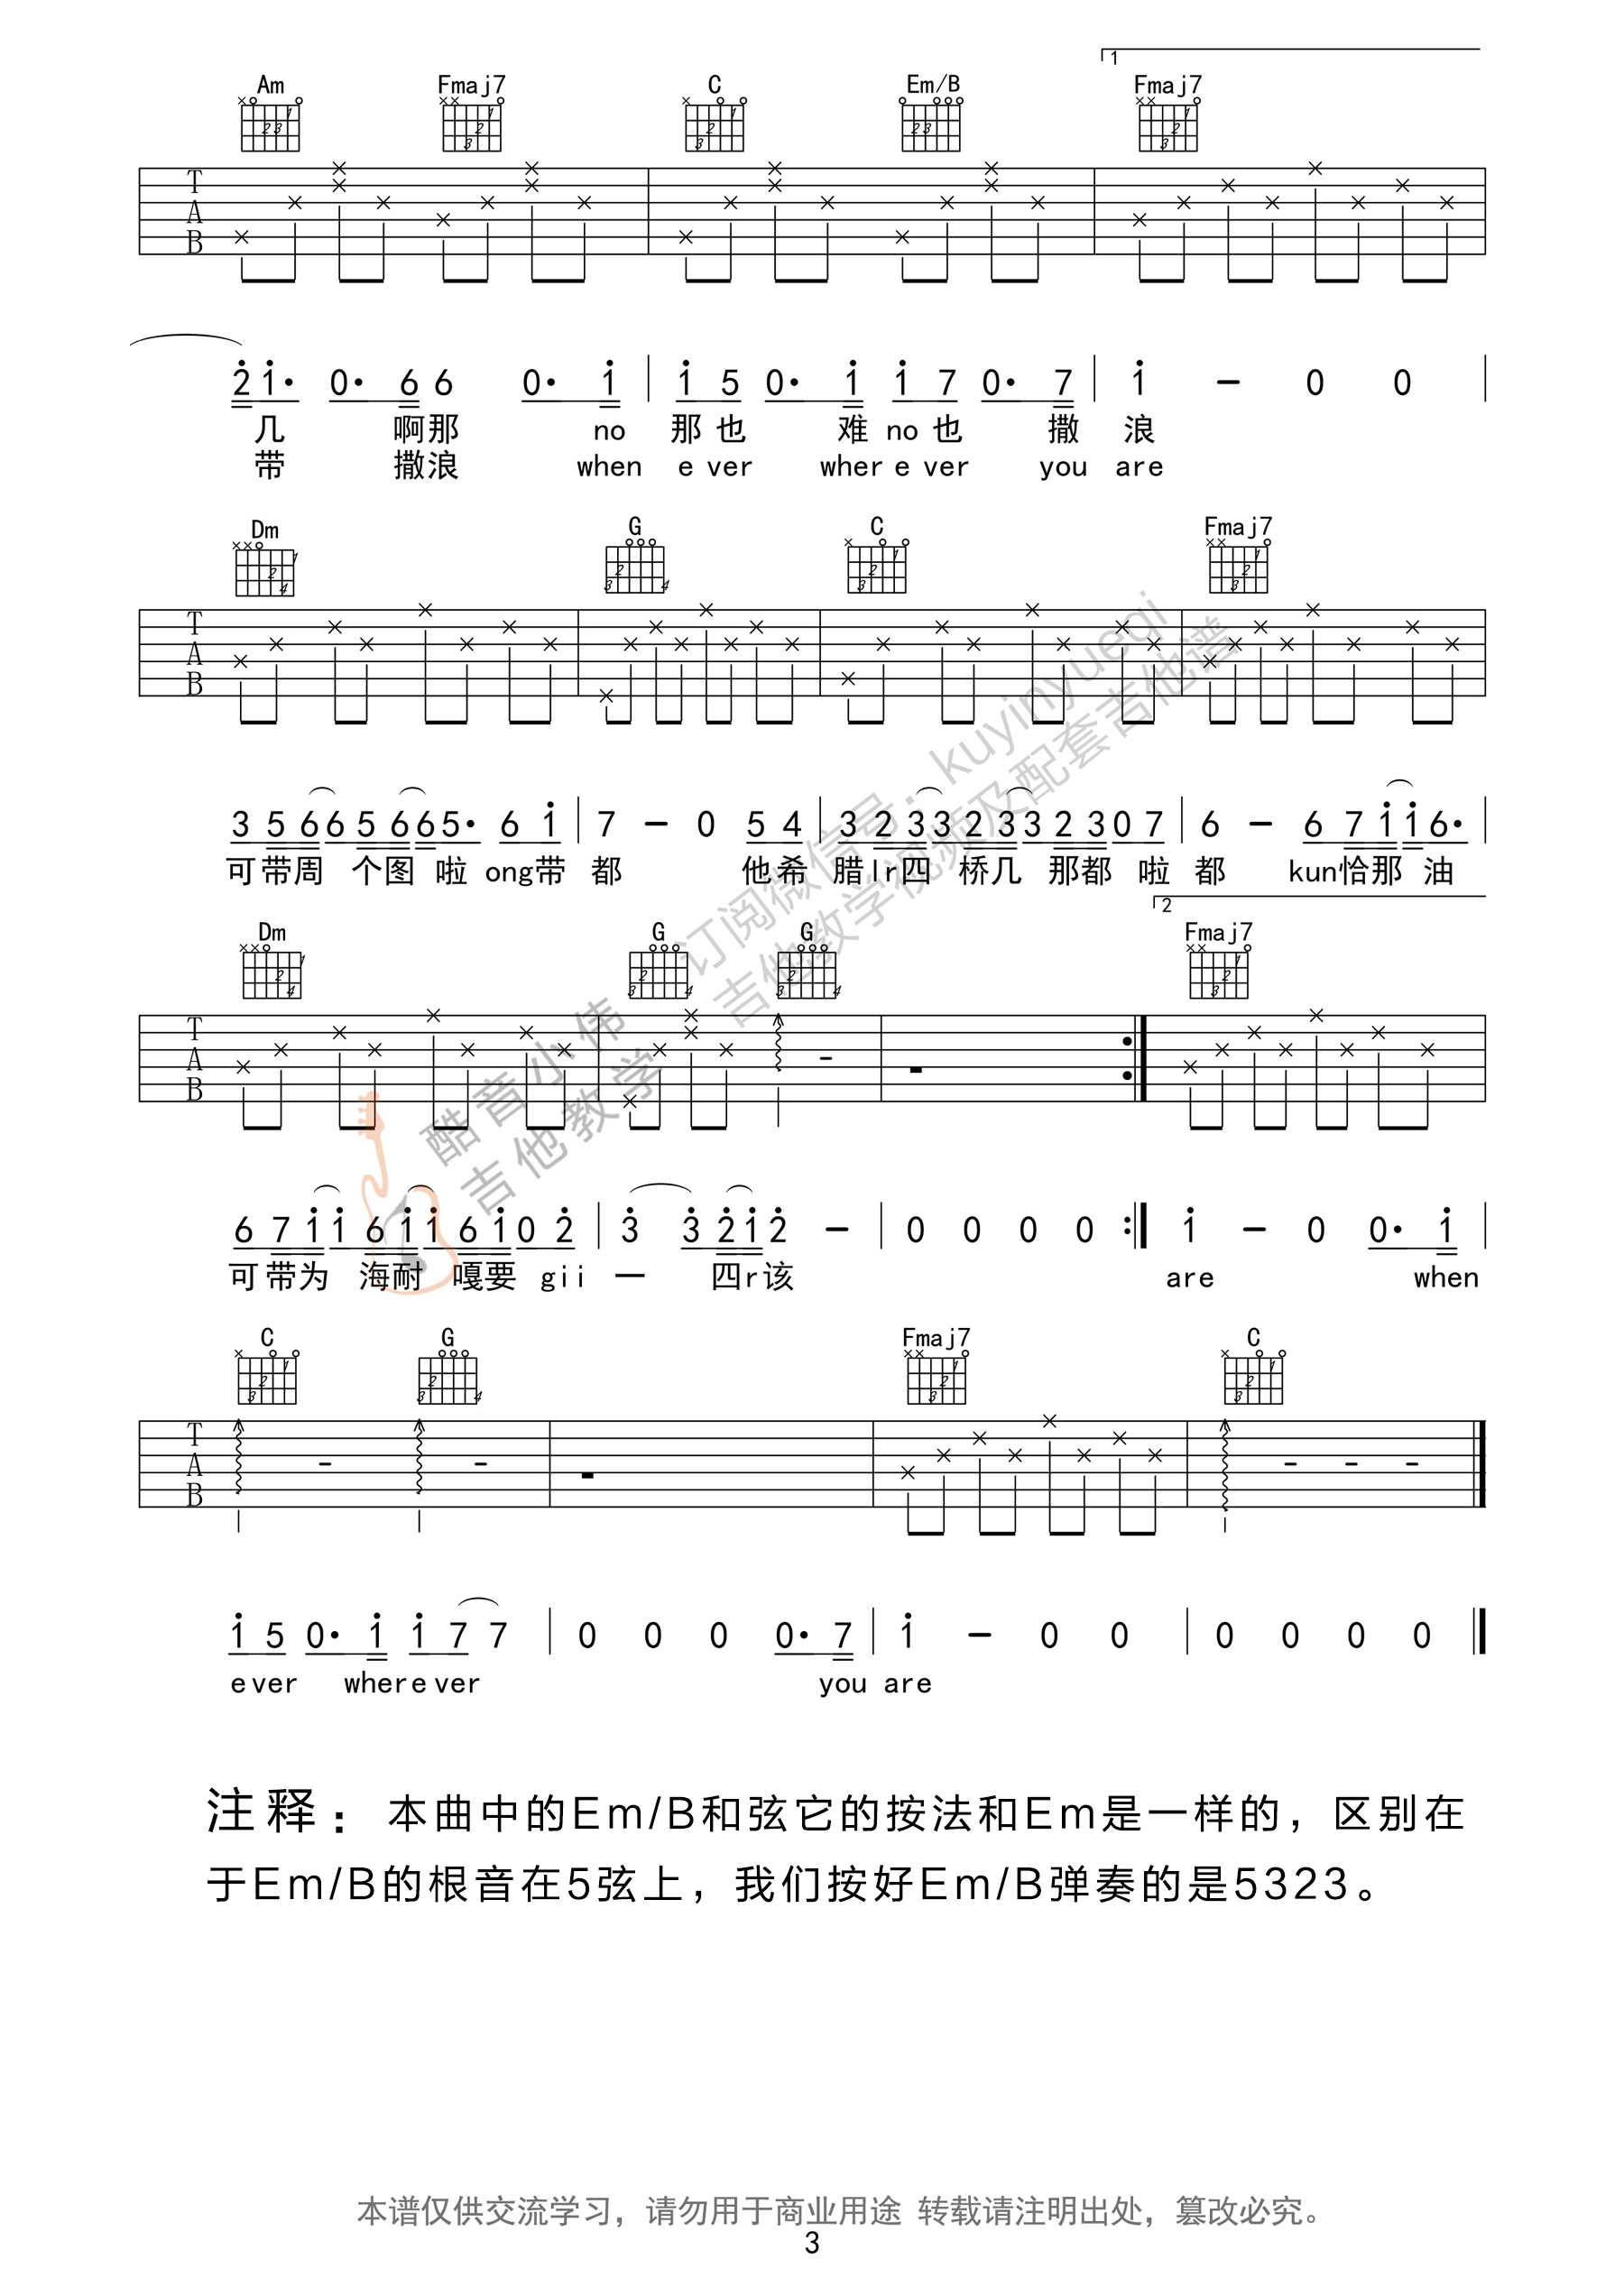 尹美莱的《Always》谱子吉他谱 - 国语版六线谱 - 初级版 - 吉他简谱